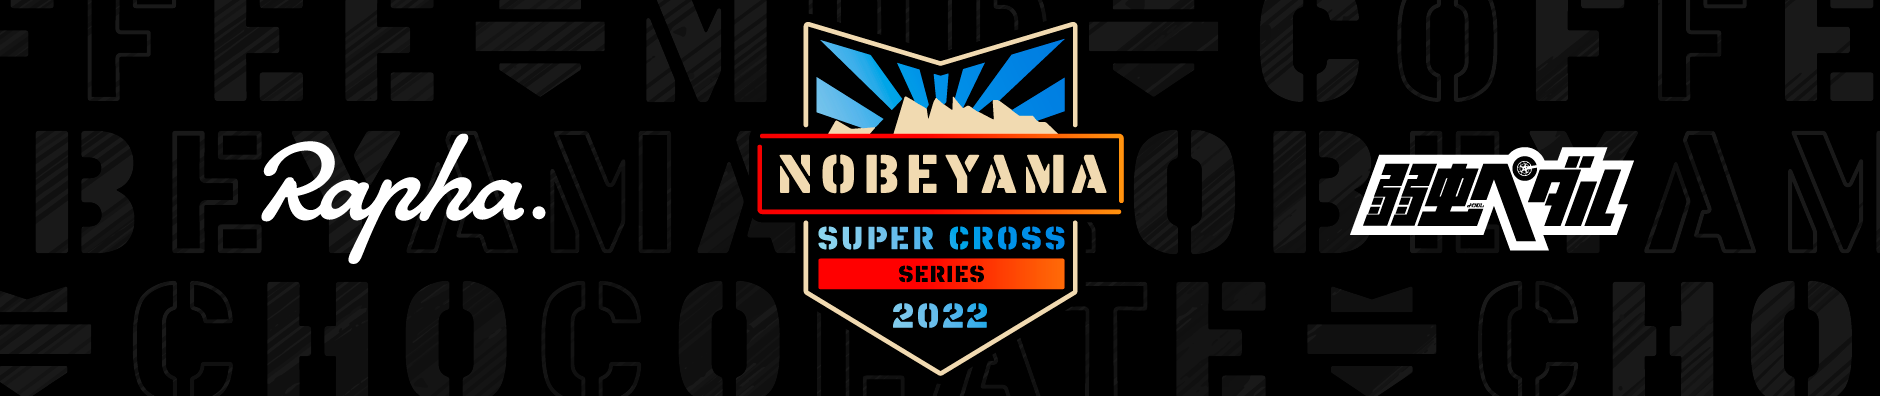 Supercross NOBEYAMA